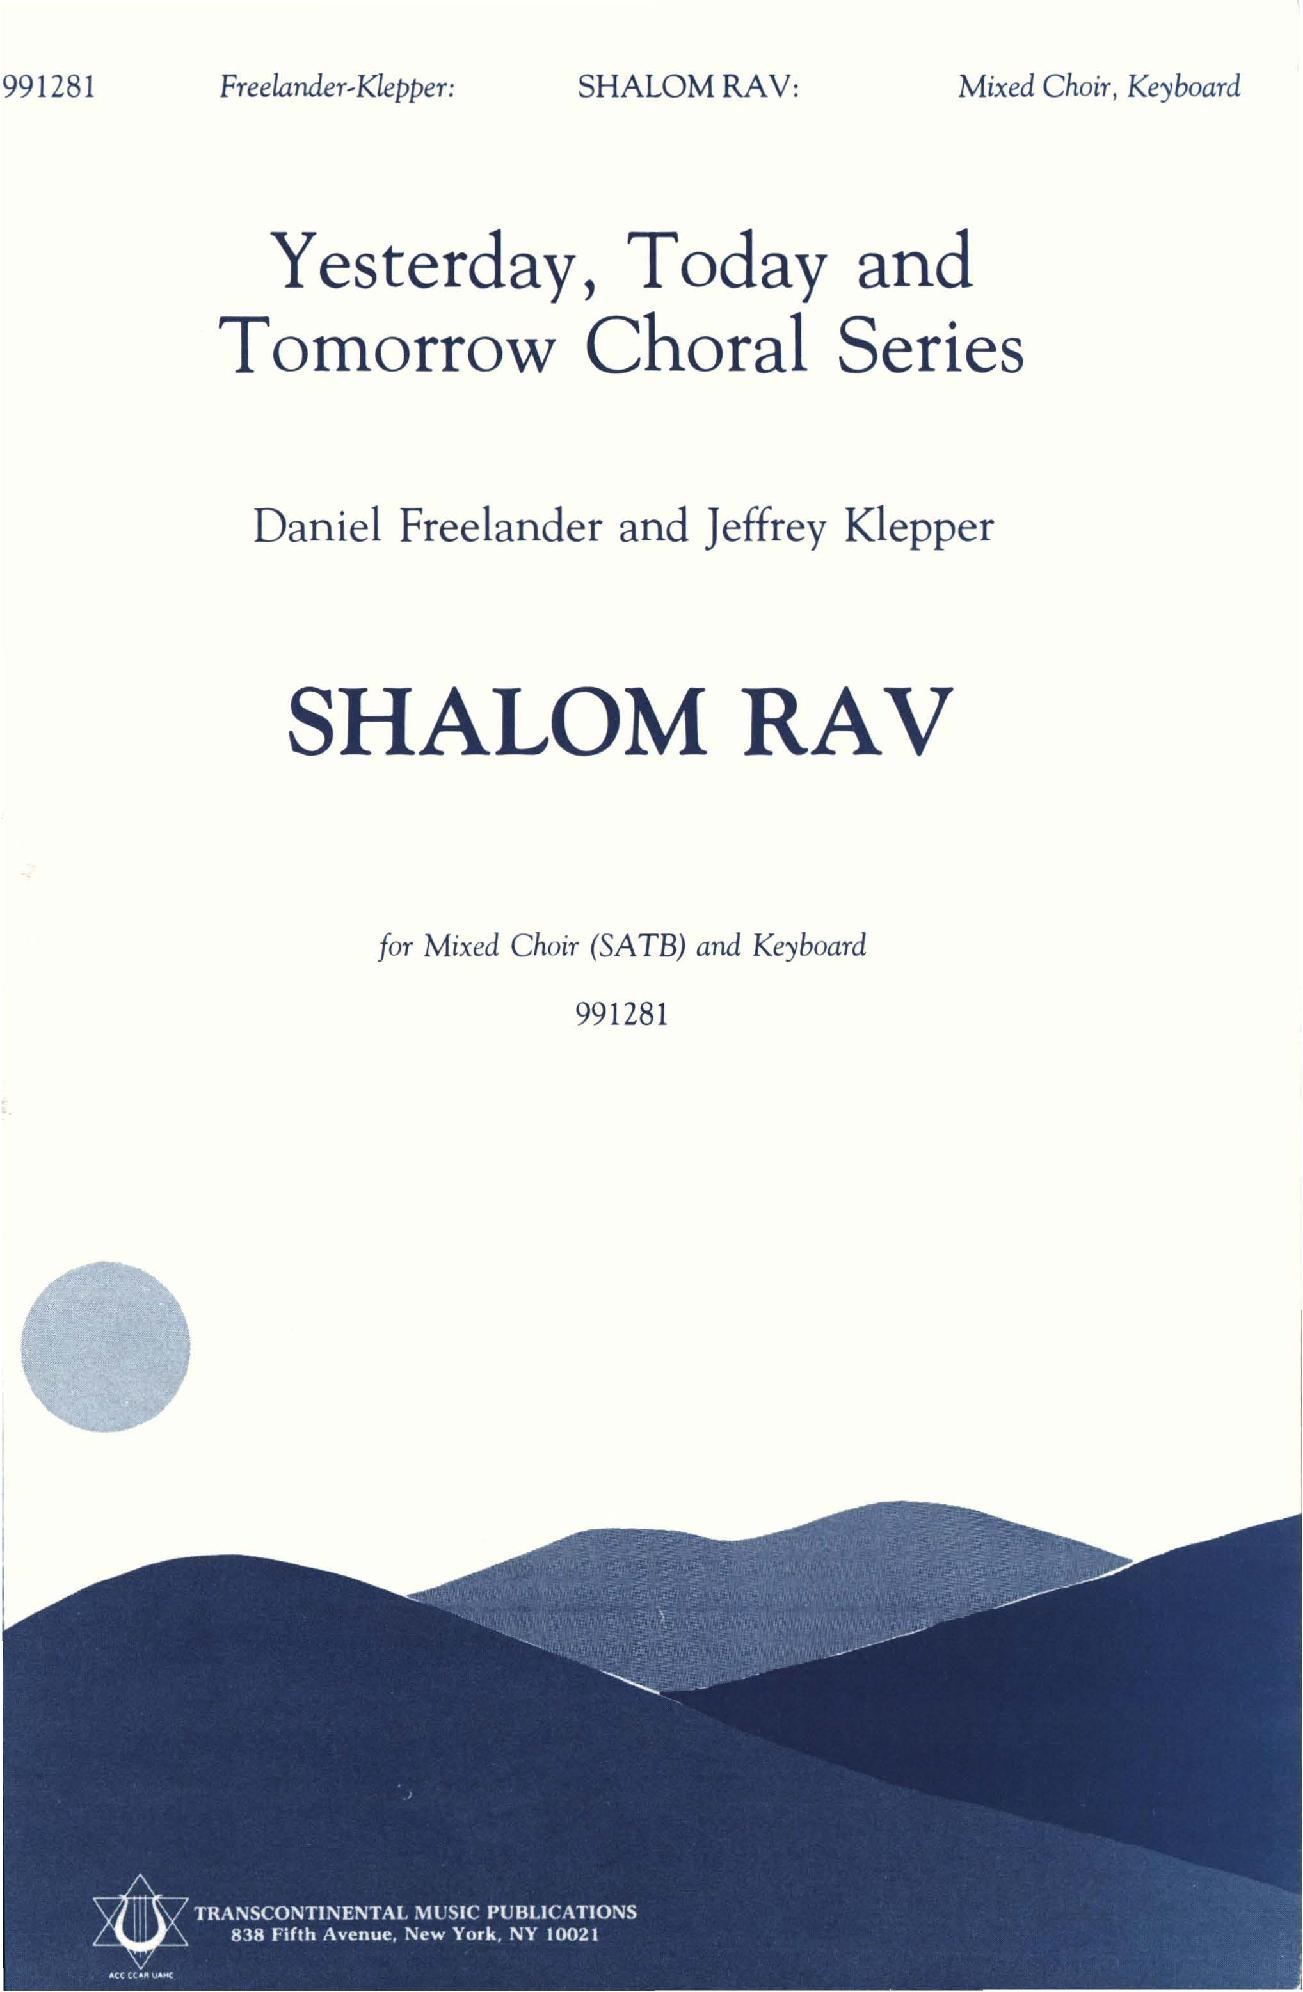 Shalom Rav by Jeff Klepper and Dan Freelander